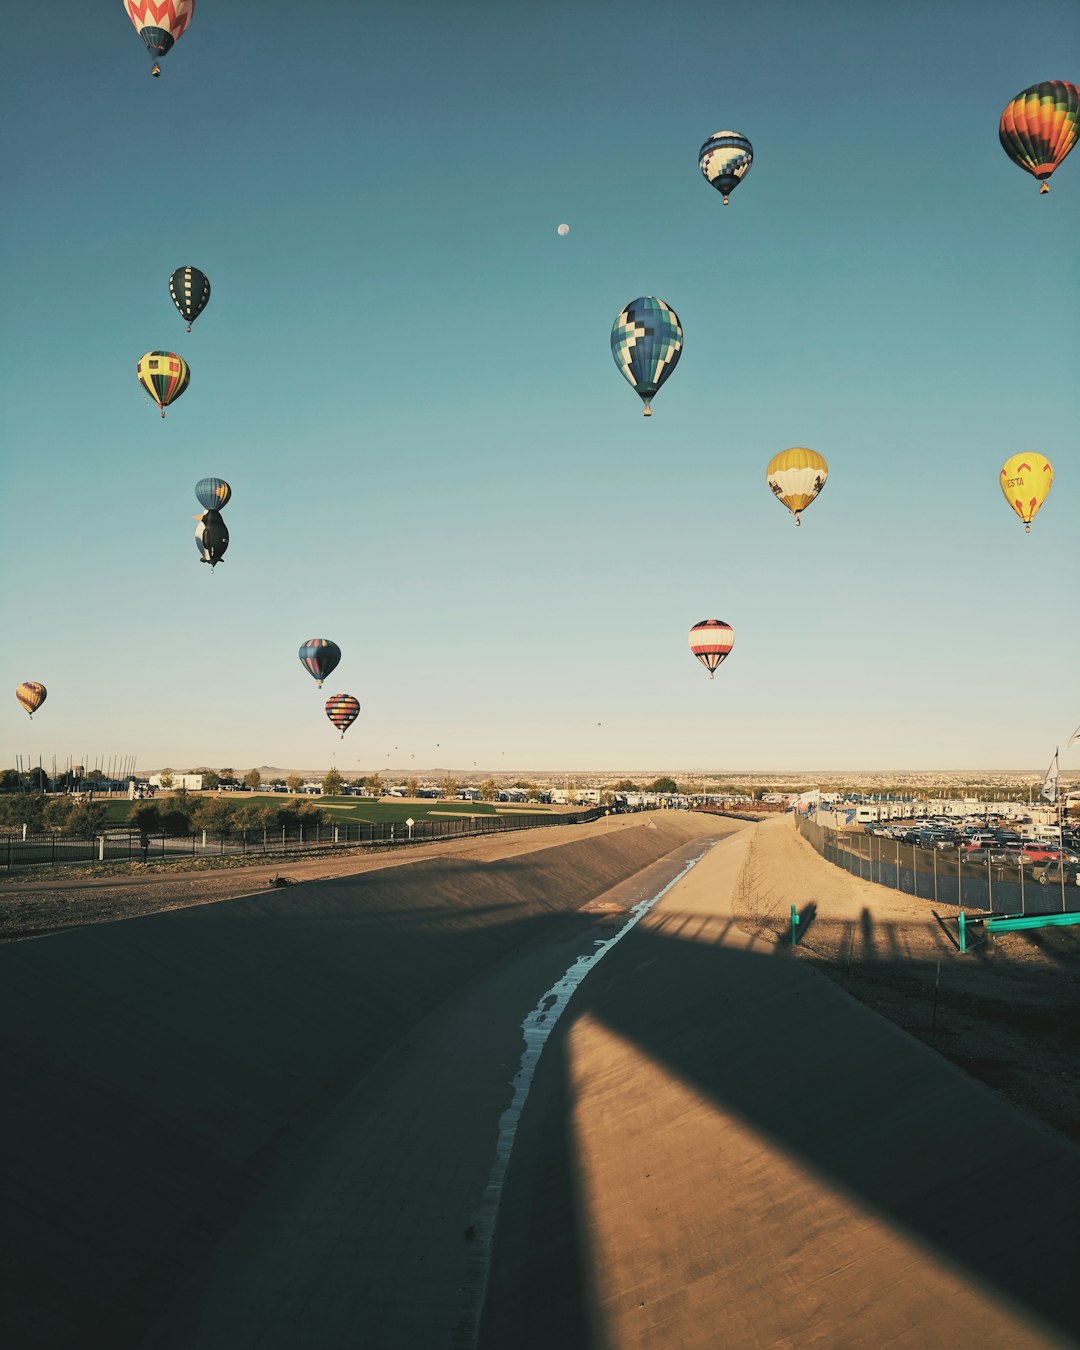 Hot air ballooning photo spot Albuquerque International Balloon Fiesta Albuquerque